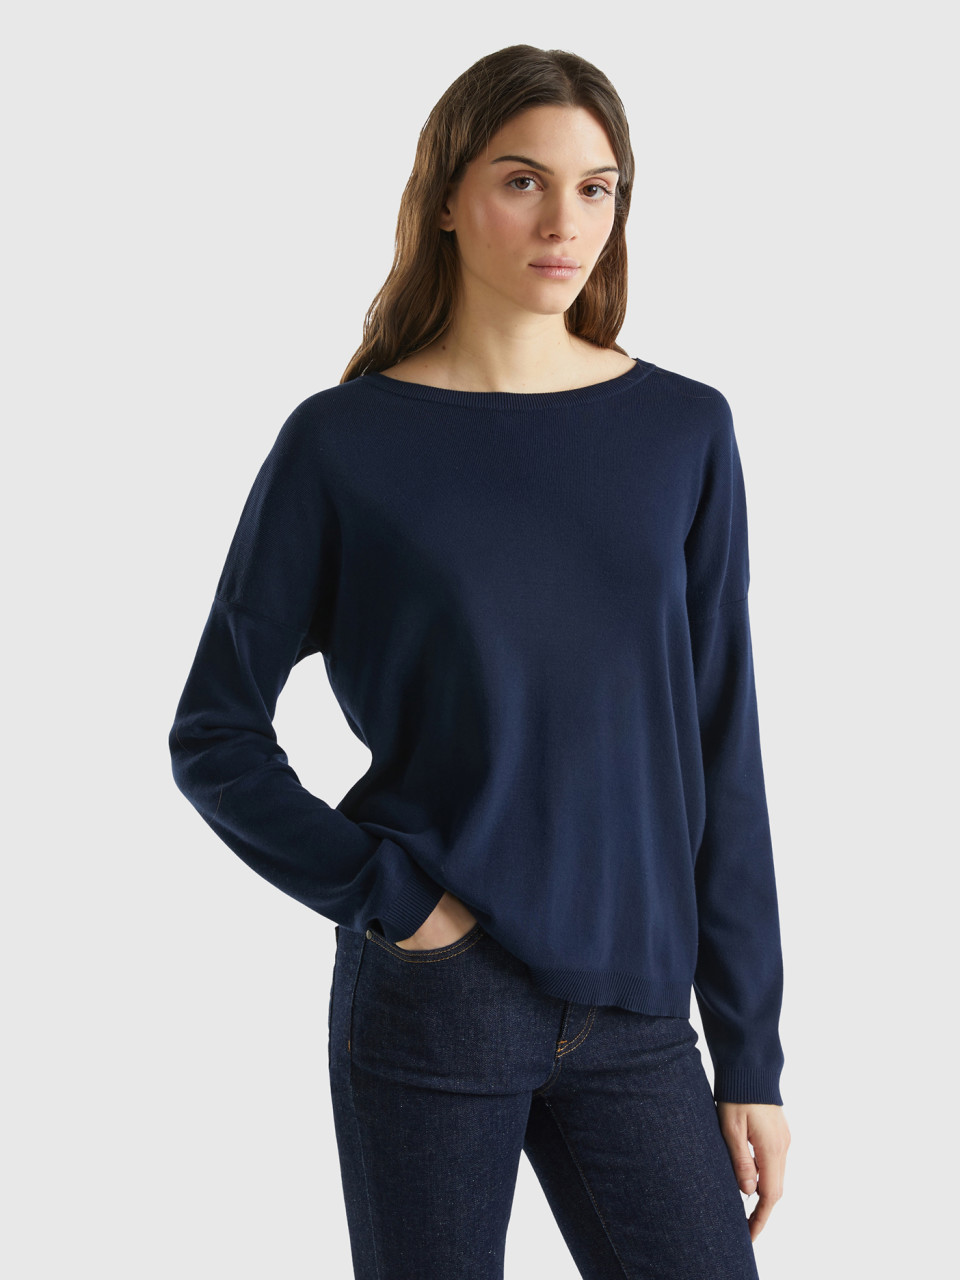 Benetton, Cotton Sweater With Round Neck, Dark Blue, Women